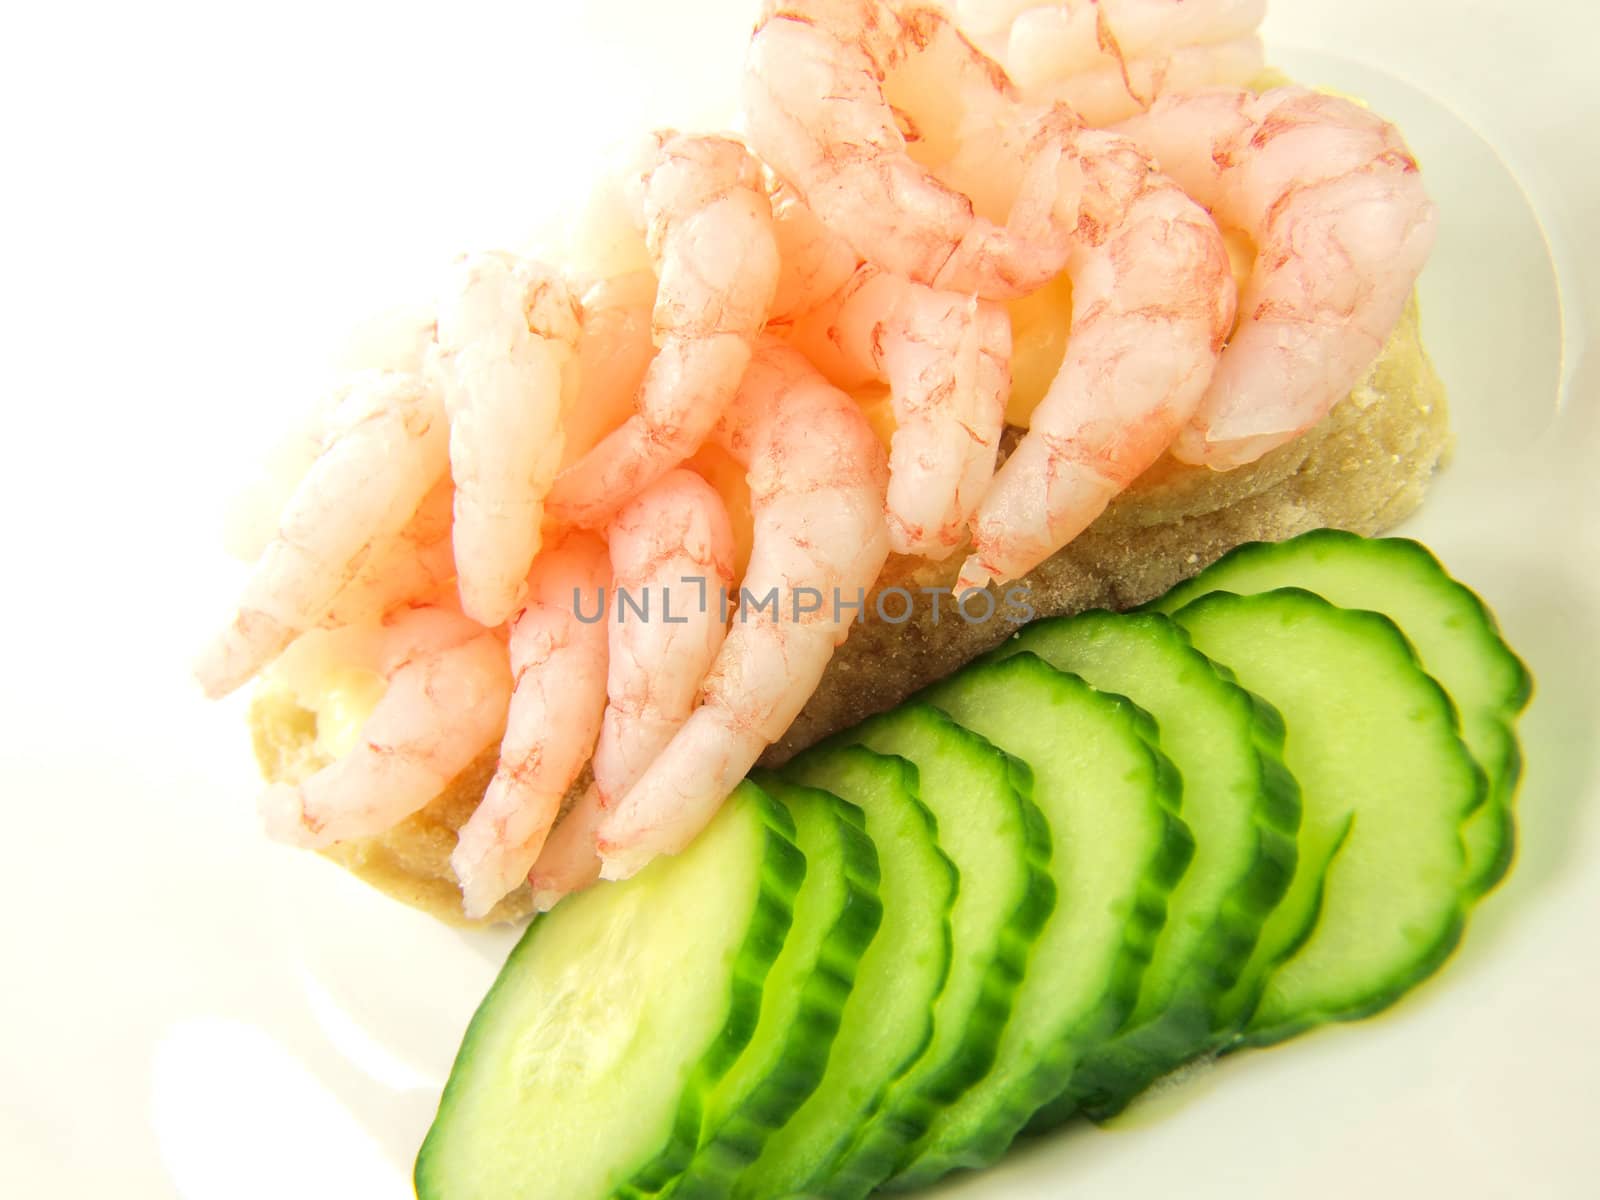 Shrimp sandwich by Arvebettum